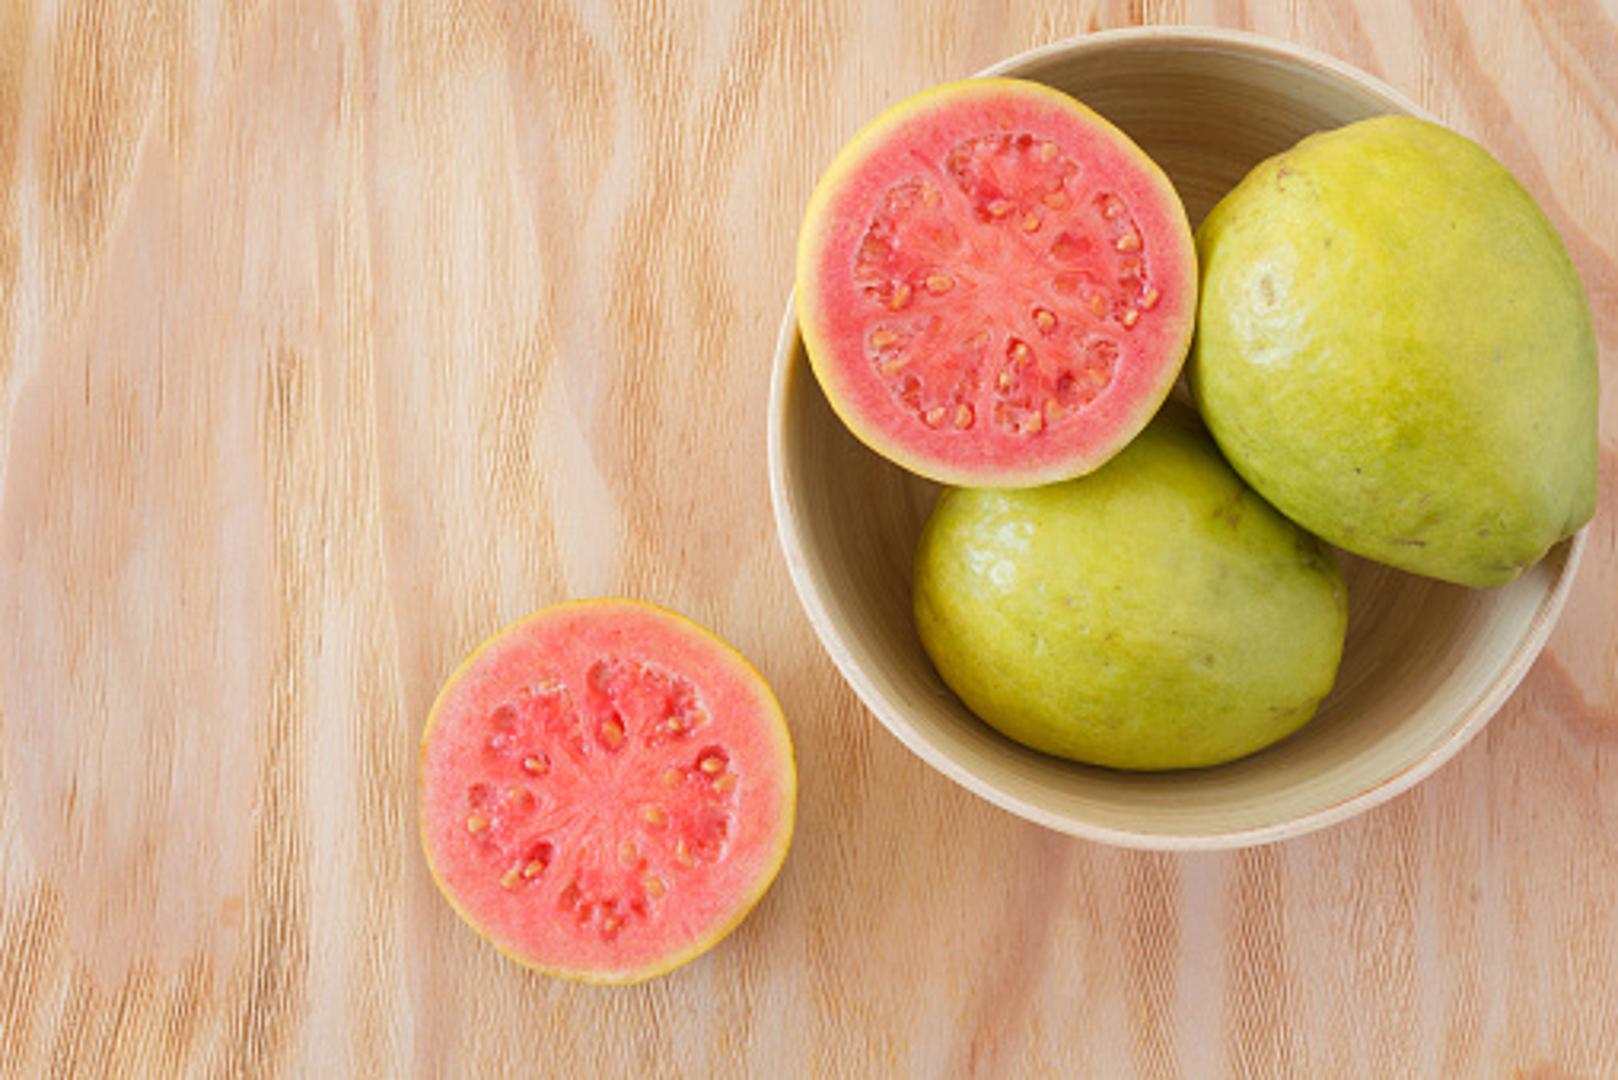 Guava - Ovo tropsko voće obiluje vlaknima i sprečava zatvor. Ima niski glikemijski indeks te se preporuča i osobama s dijabetesom. Jedna guava sadrži 37 kalorija i ne sadrži kolesterol. 